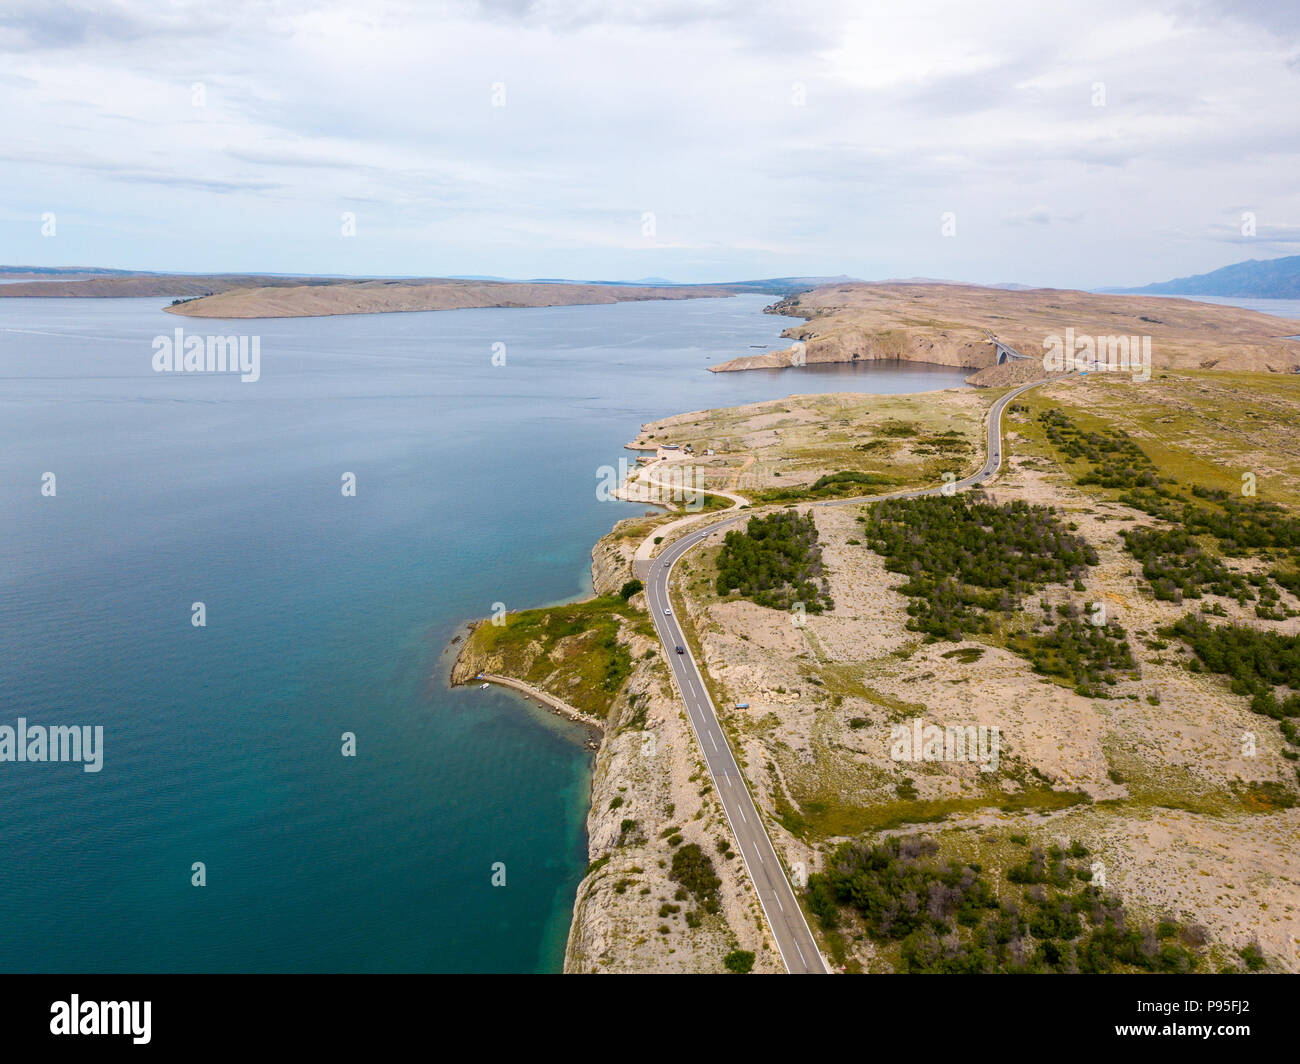 Vue aérienne de la côte de la Croatie, de routes sinueuses et de criques avec une mer cristalline. Côte de l'île de Pag Banque D'Images